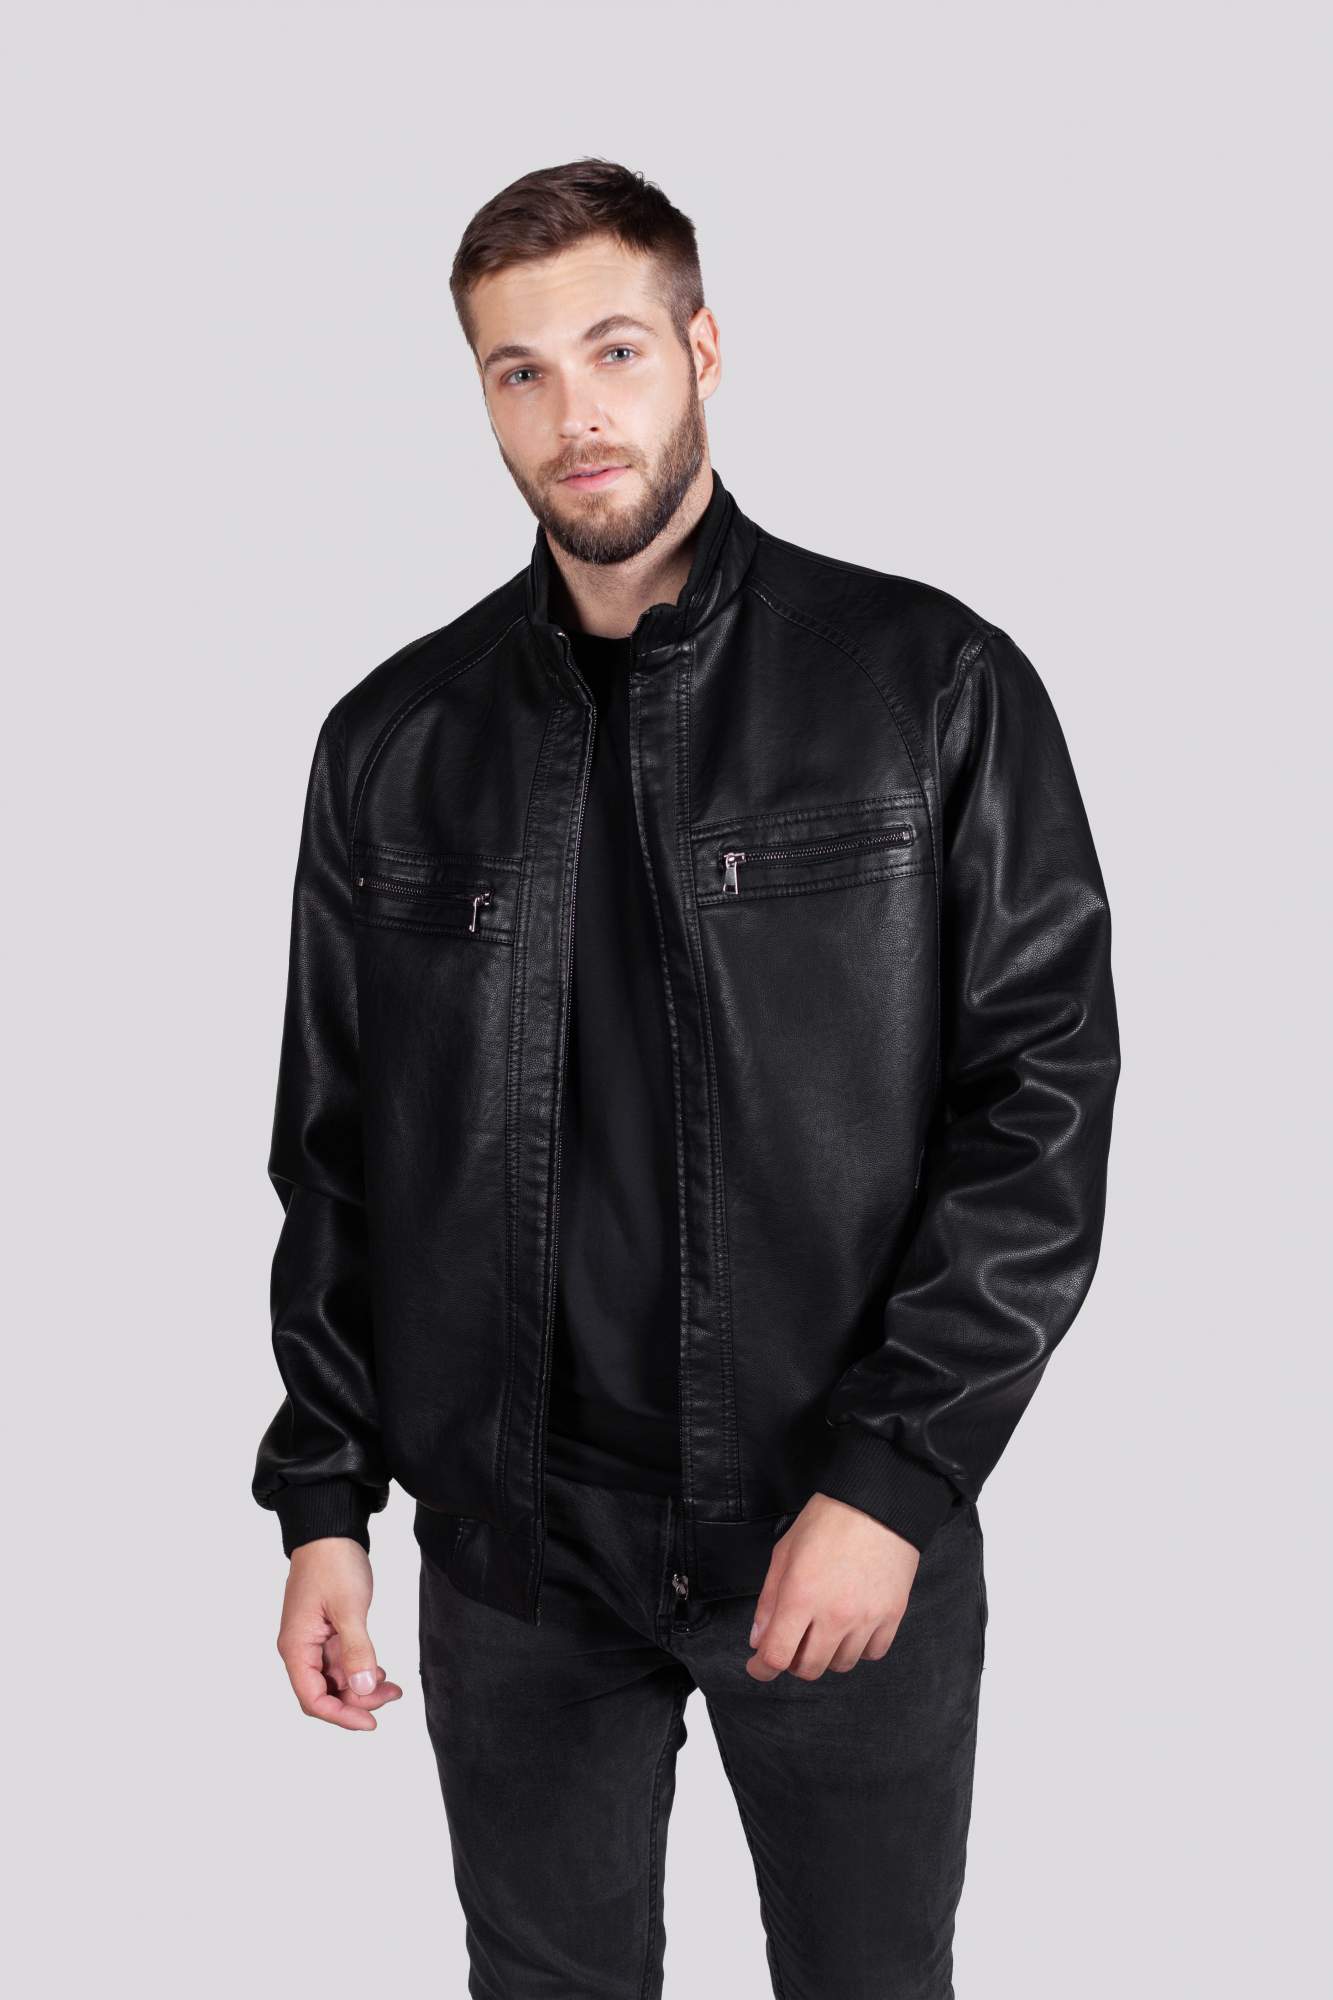 Кожаная куртка мужская RATSKA 809 черная 62 RU - купить в Москве, цены на Мегамаркет | 600016643178